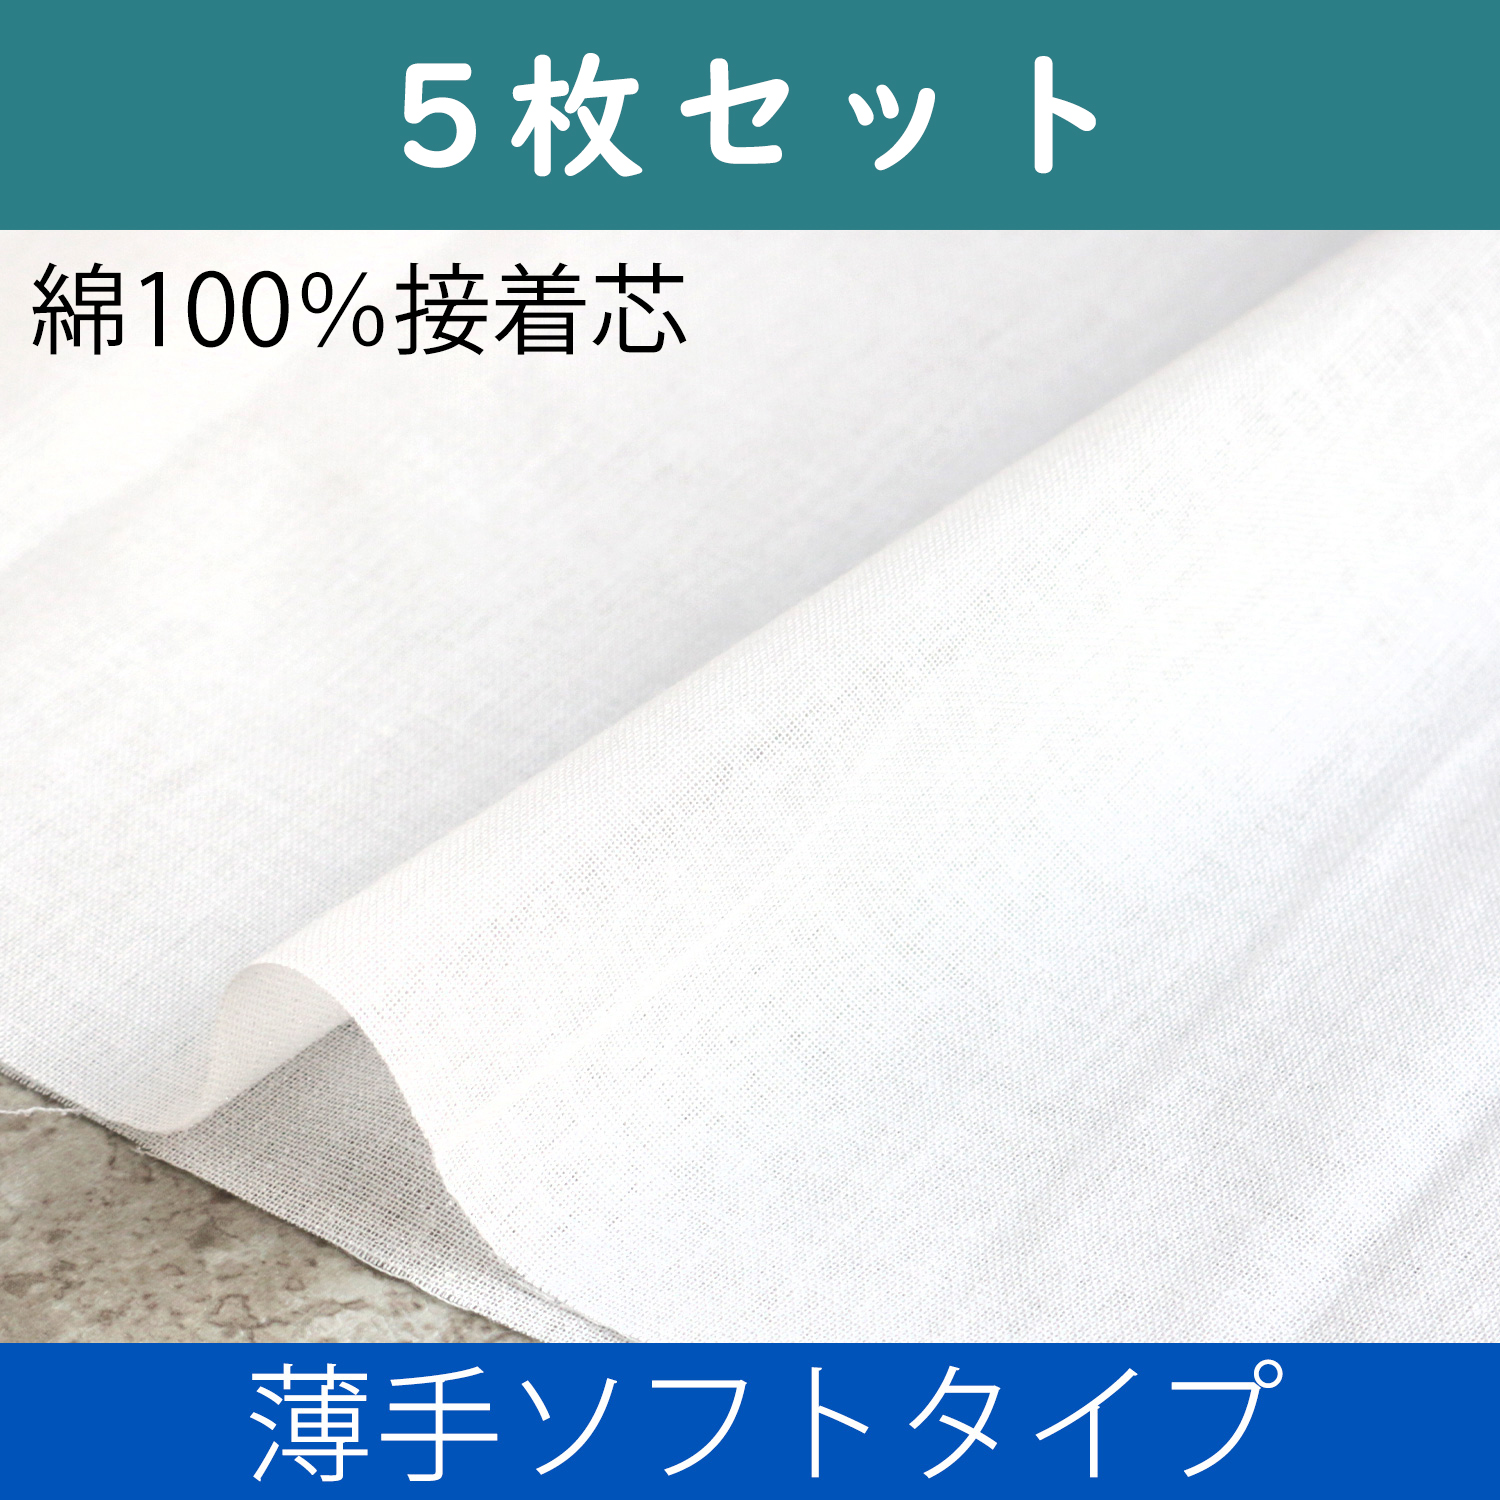 N-13W-5 100% Cotton Adhesive Interlining <Soft Type> 1 Sheet/5pack (set)